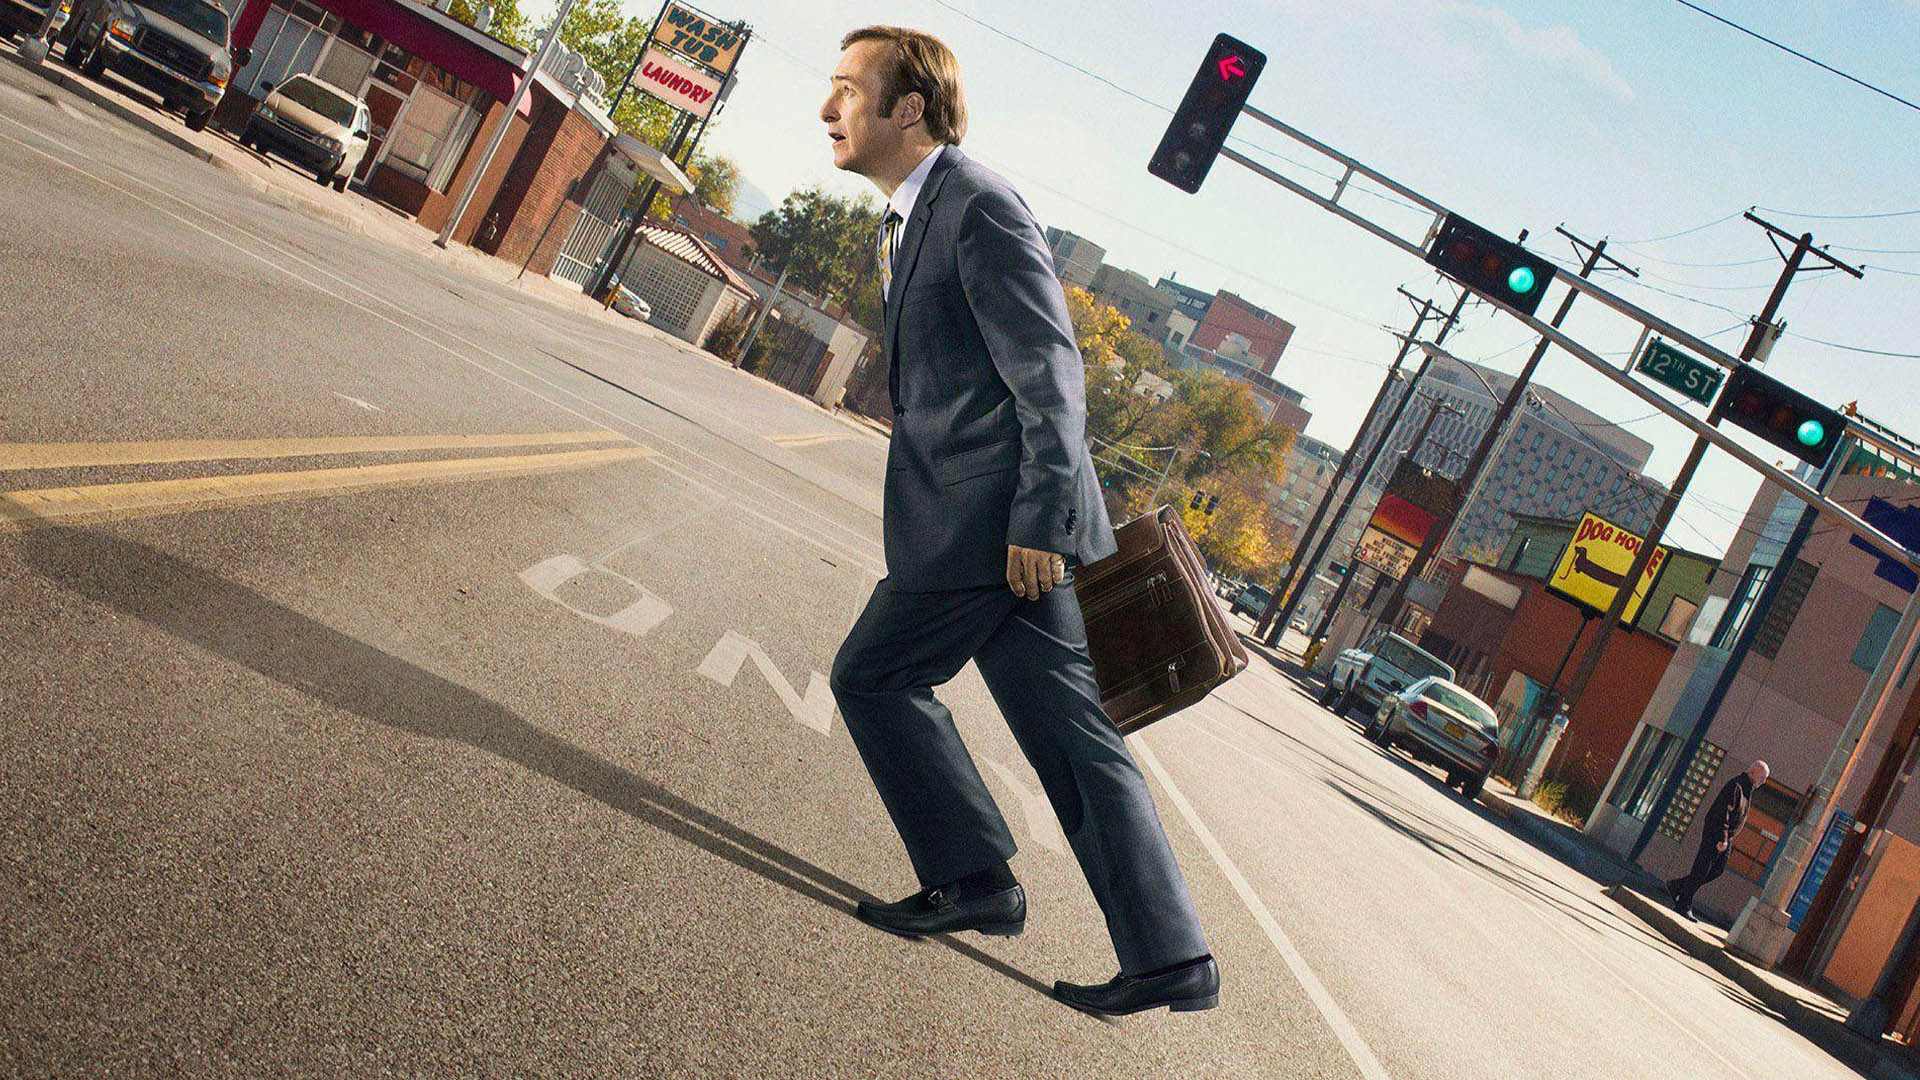 تصویری کج از شخصیت جیمی مک‌گیل در حال راه رفتن در سریال better call saul 